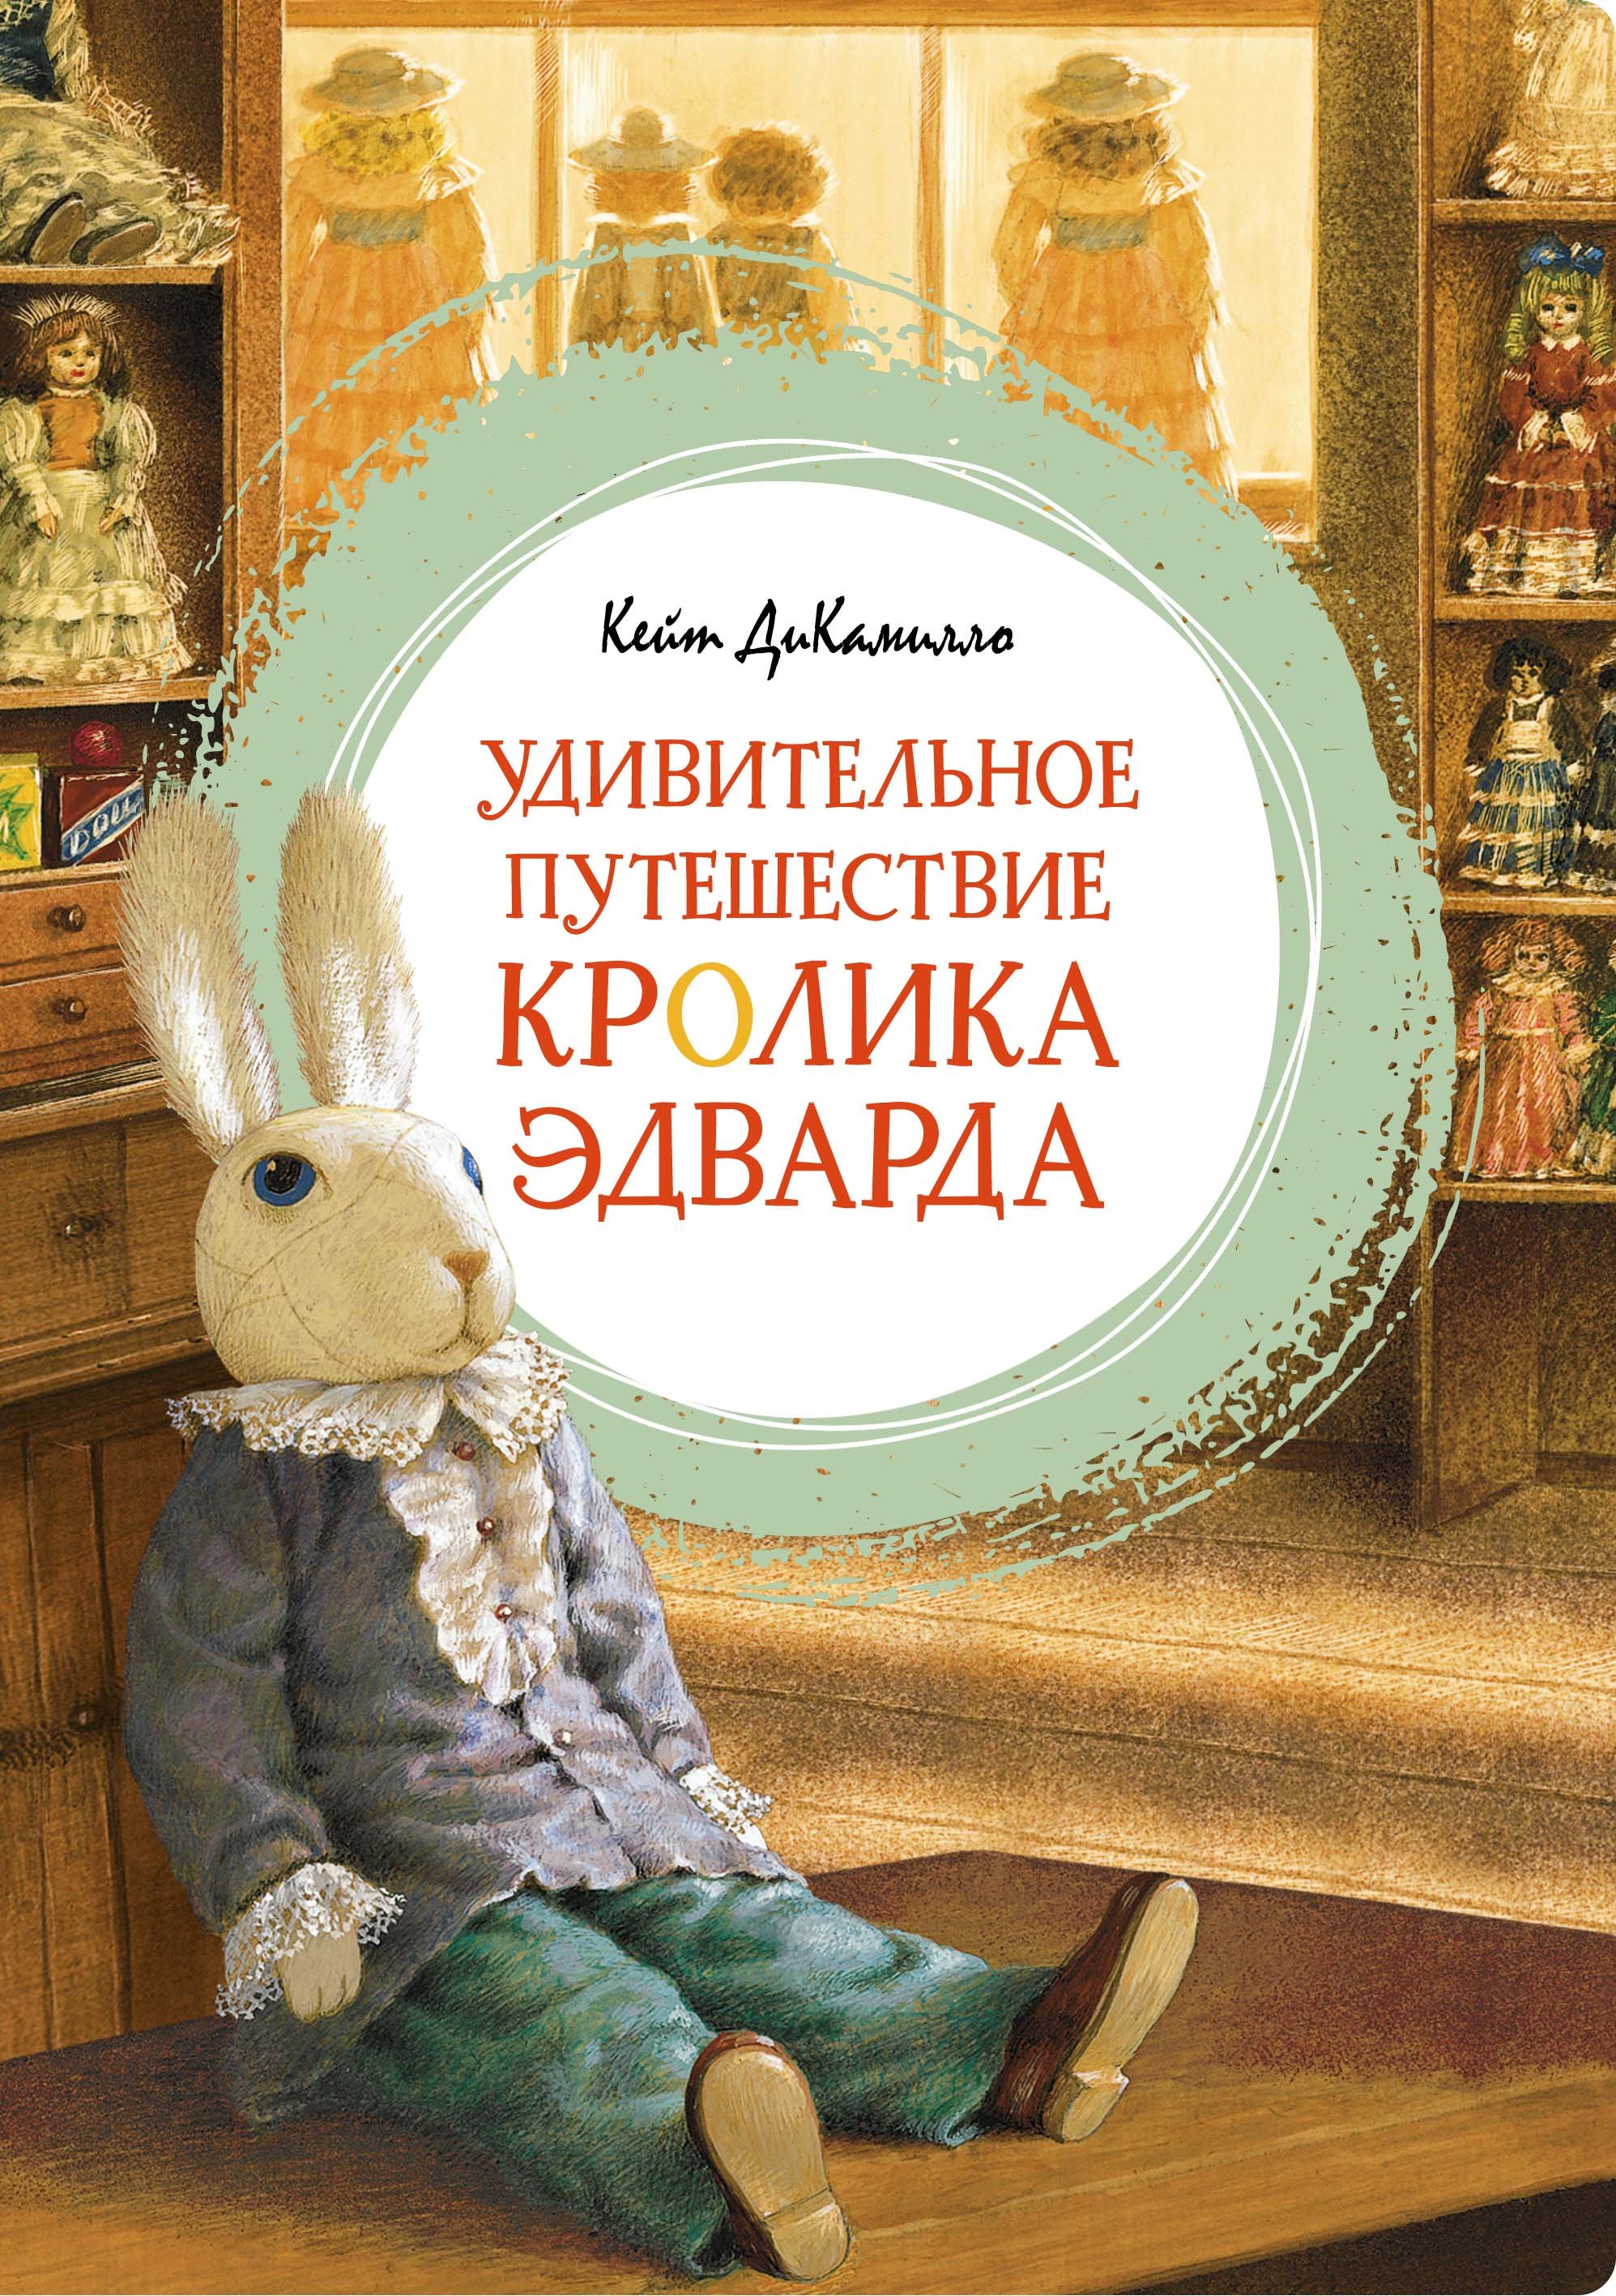 Удивительное приключение кролика. Кейт ди Камилло удивительное путешествие кролика Эдварда. Удивительное путешествие кролика Эдварда Кейт ДИКАМИЛЛО книга.